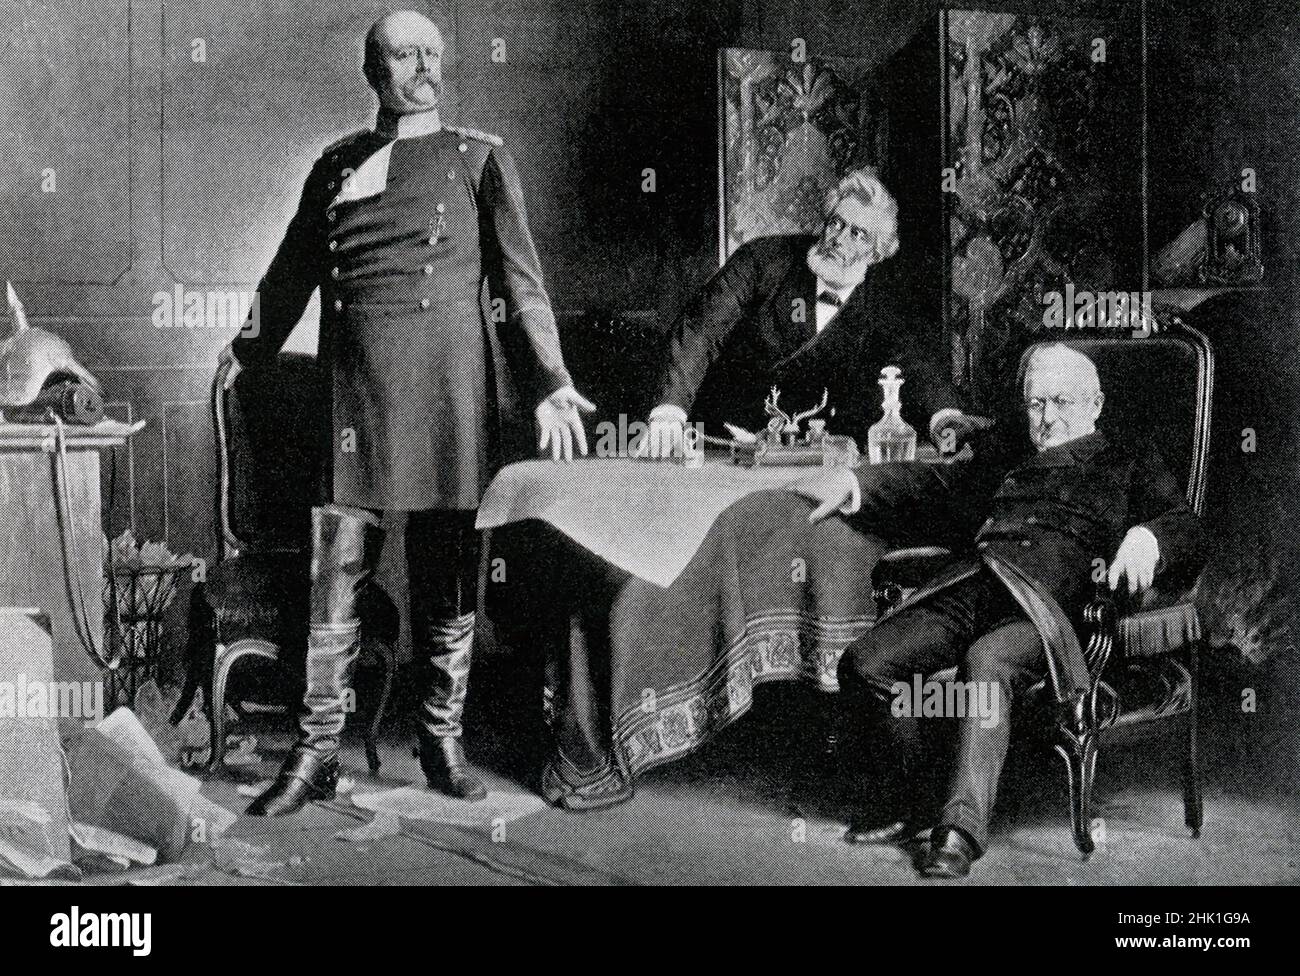 Aquí se muestra la reunión en Versalles entre Otto von Bismarck (izquierda) y Adolphe Thiers (sentado a la derecha) en el Palacio de Versalles, Francia. Bismarck está dictando los términos de paz a Thiers en febrero de 1871. Bismarck había ordenado que la ciudad de París fuera bombardeada con pistolas de asedio Krupp de gran calibre. Esto provocó la rendición de la ciudad el 28 de enero de 1871. Las discusiones secretas del armisticio comenzaron el 23 de enero de 1871 y continuaron en Versalles. La guerra franco-prusiana o guerra franco-alemana, a menudo referida en Francia como la guerra de 1870, era un conflicto entre el Segundo Imperio Francés y el Foto de stock